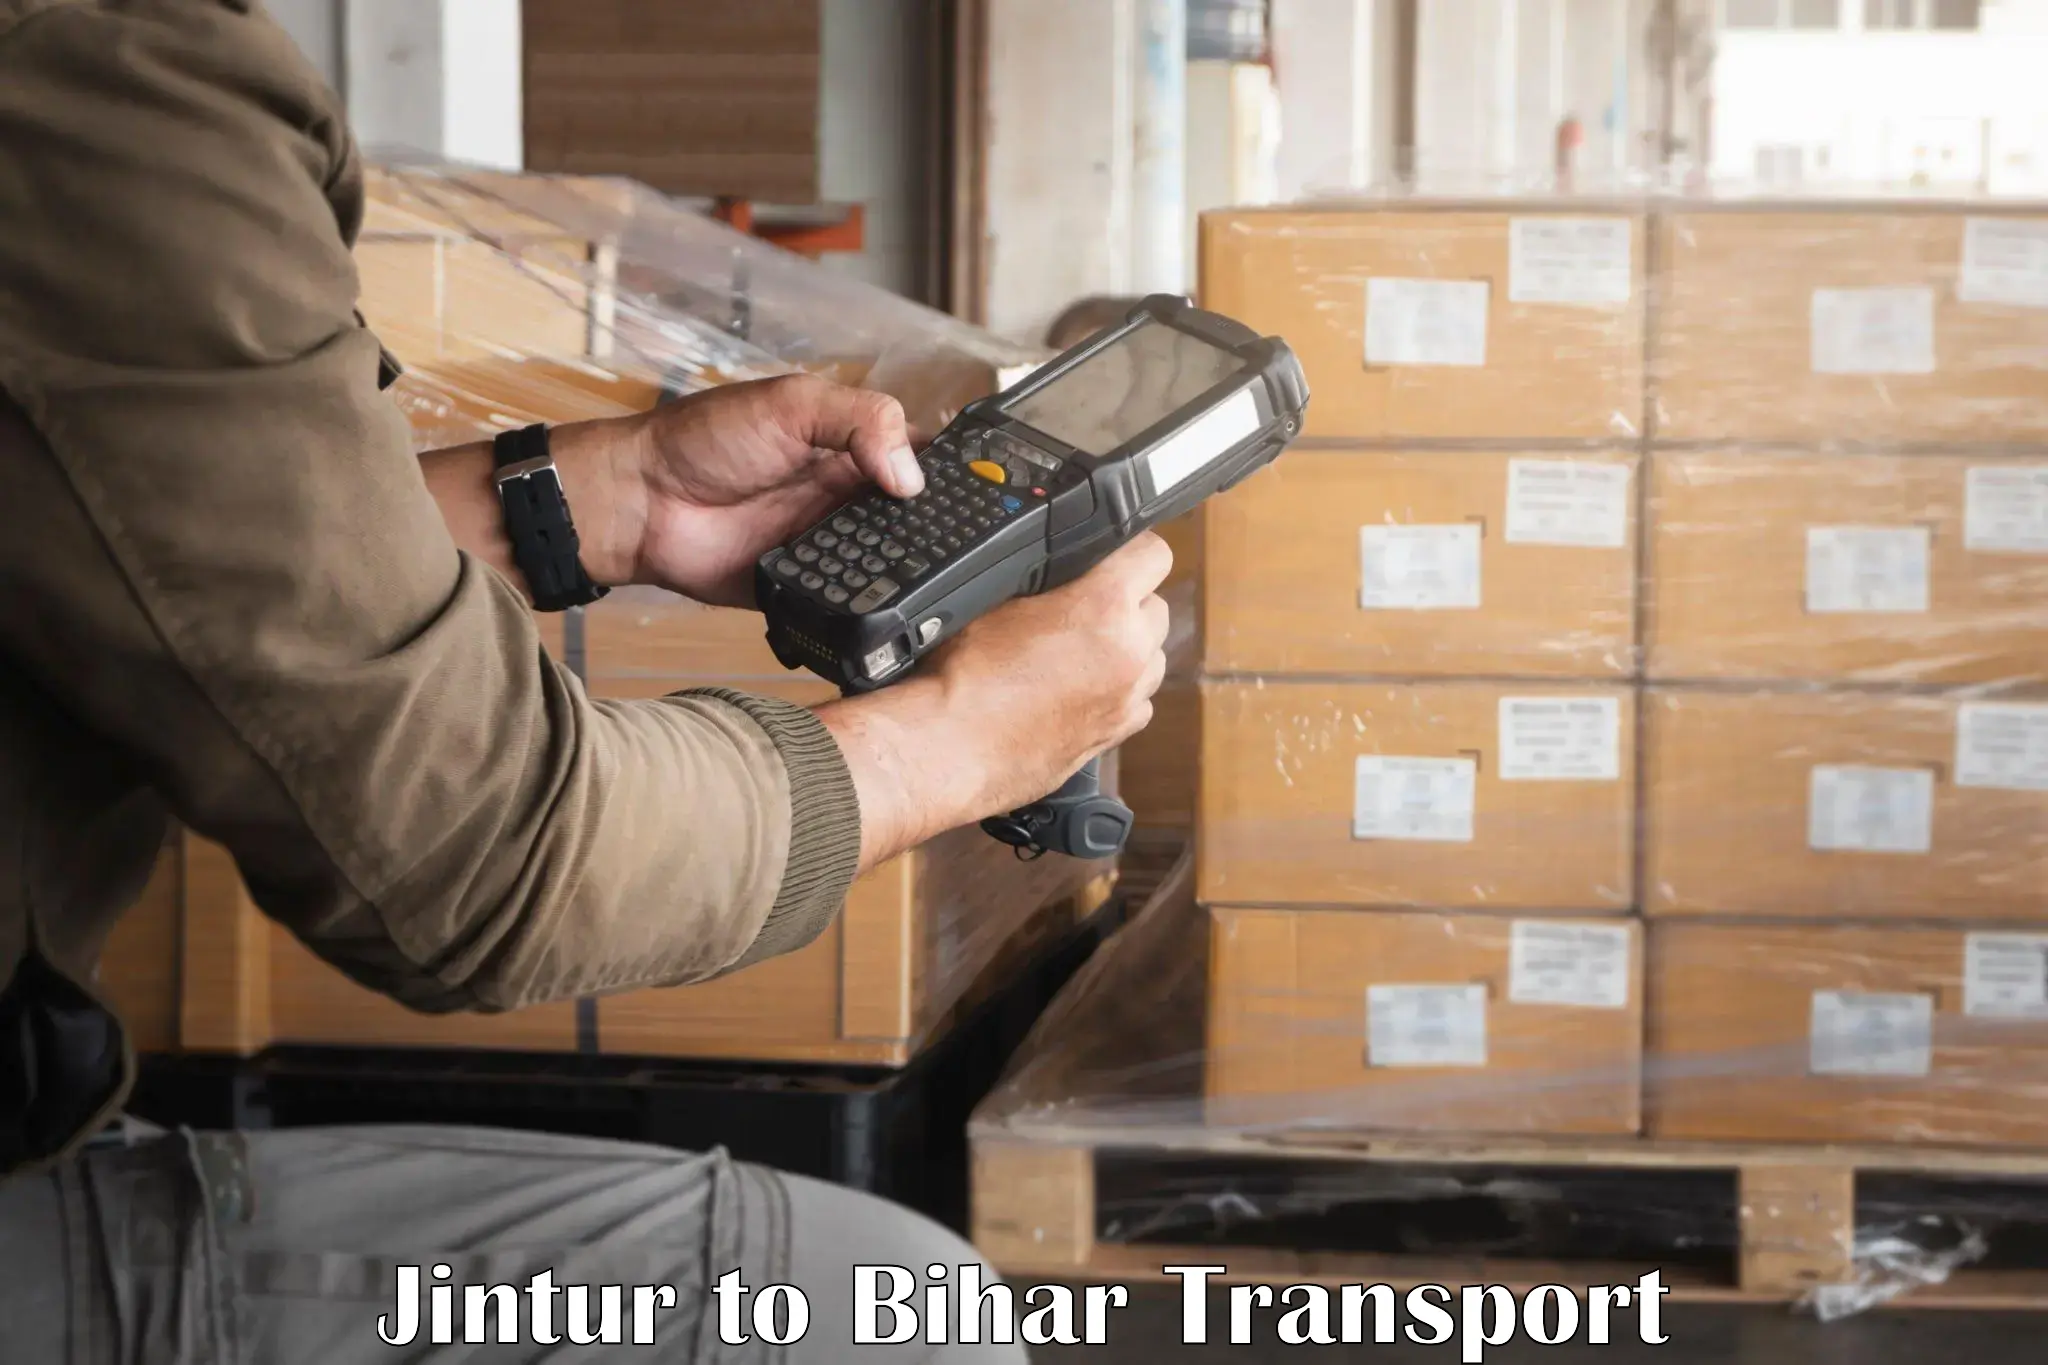 Nearest transport service Jintur to Buxar